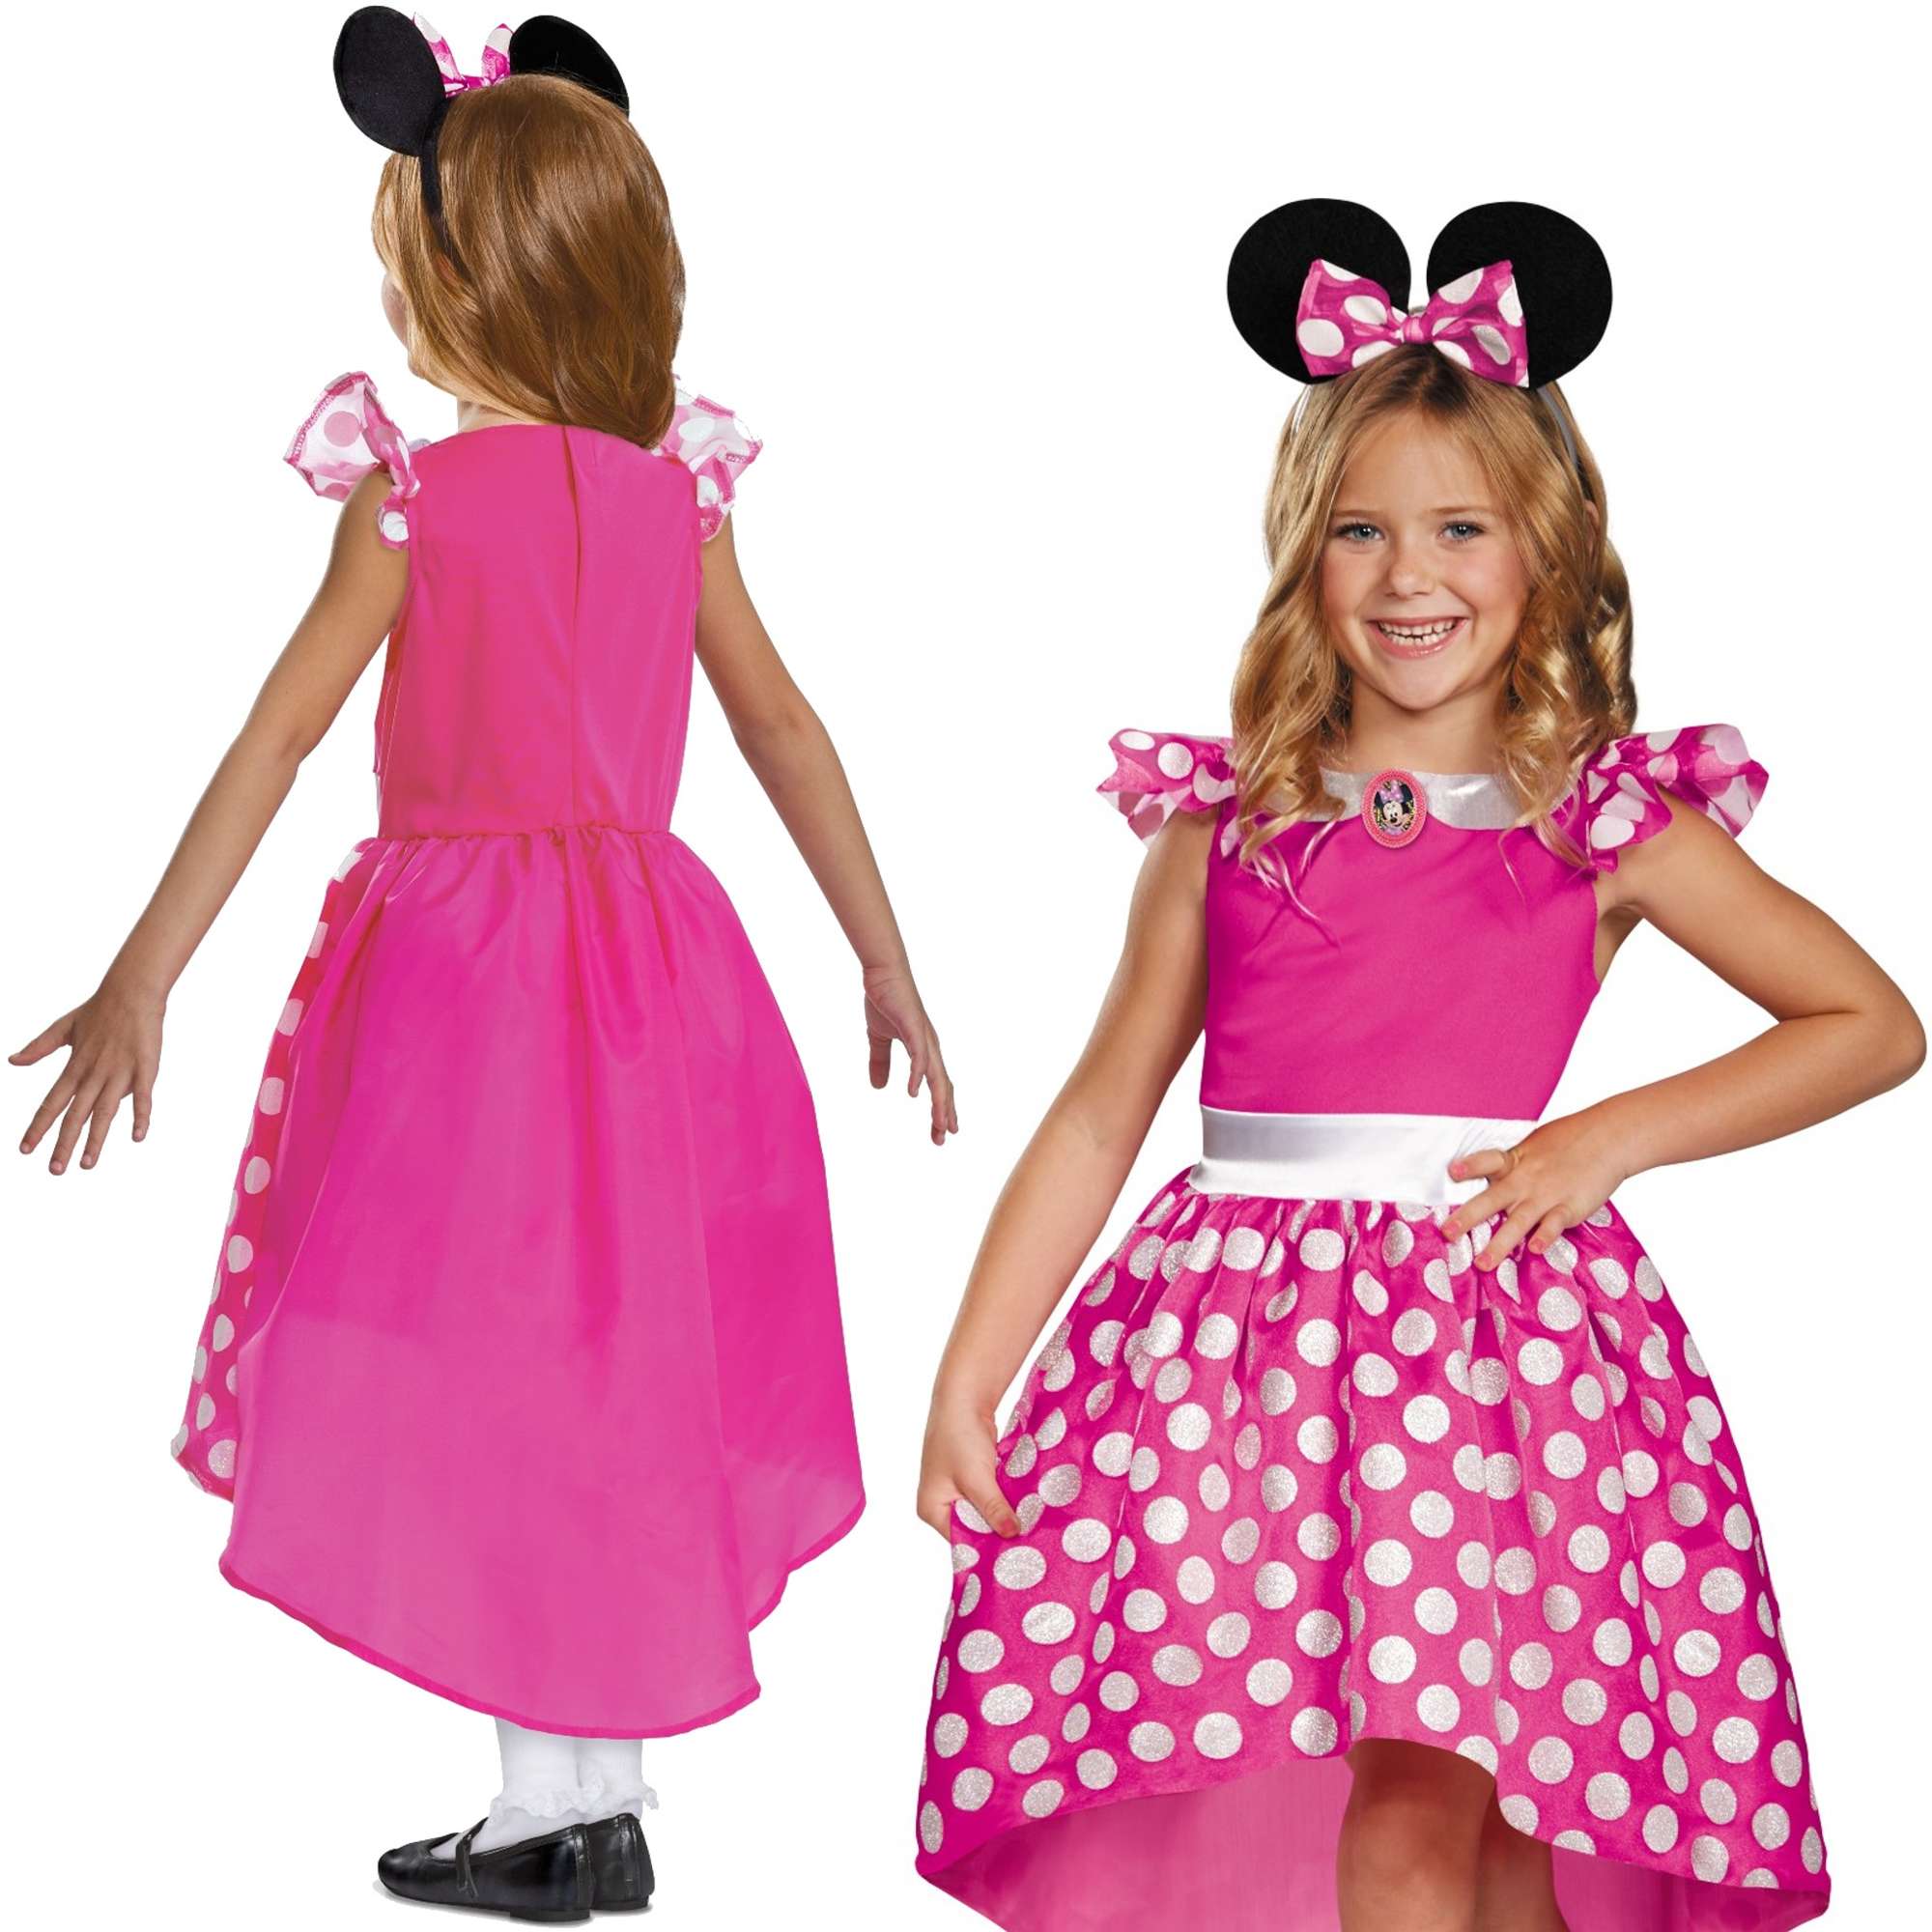 Strj karnawaowy Disney dla dziewczynki Myszka Minnie przebranie 110-122 cm (5-6 lat)